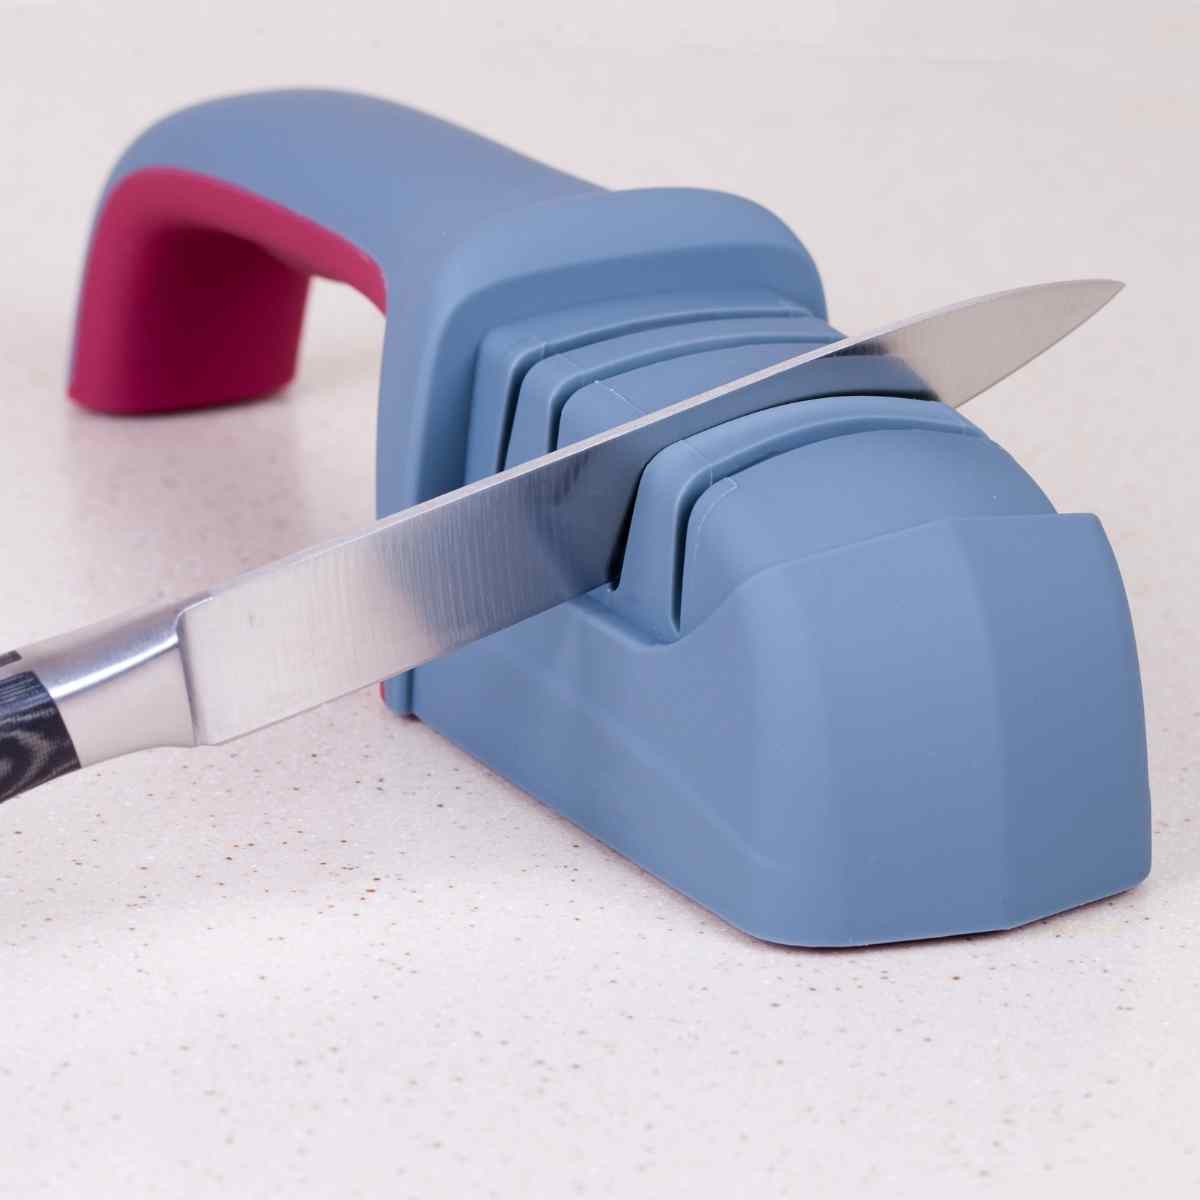 Knife sharpening tool for scissors